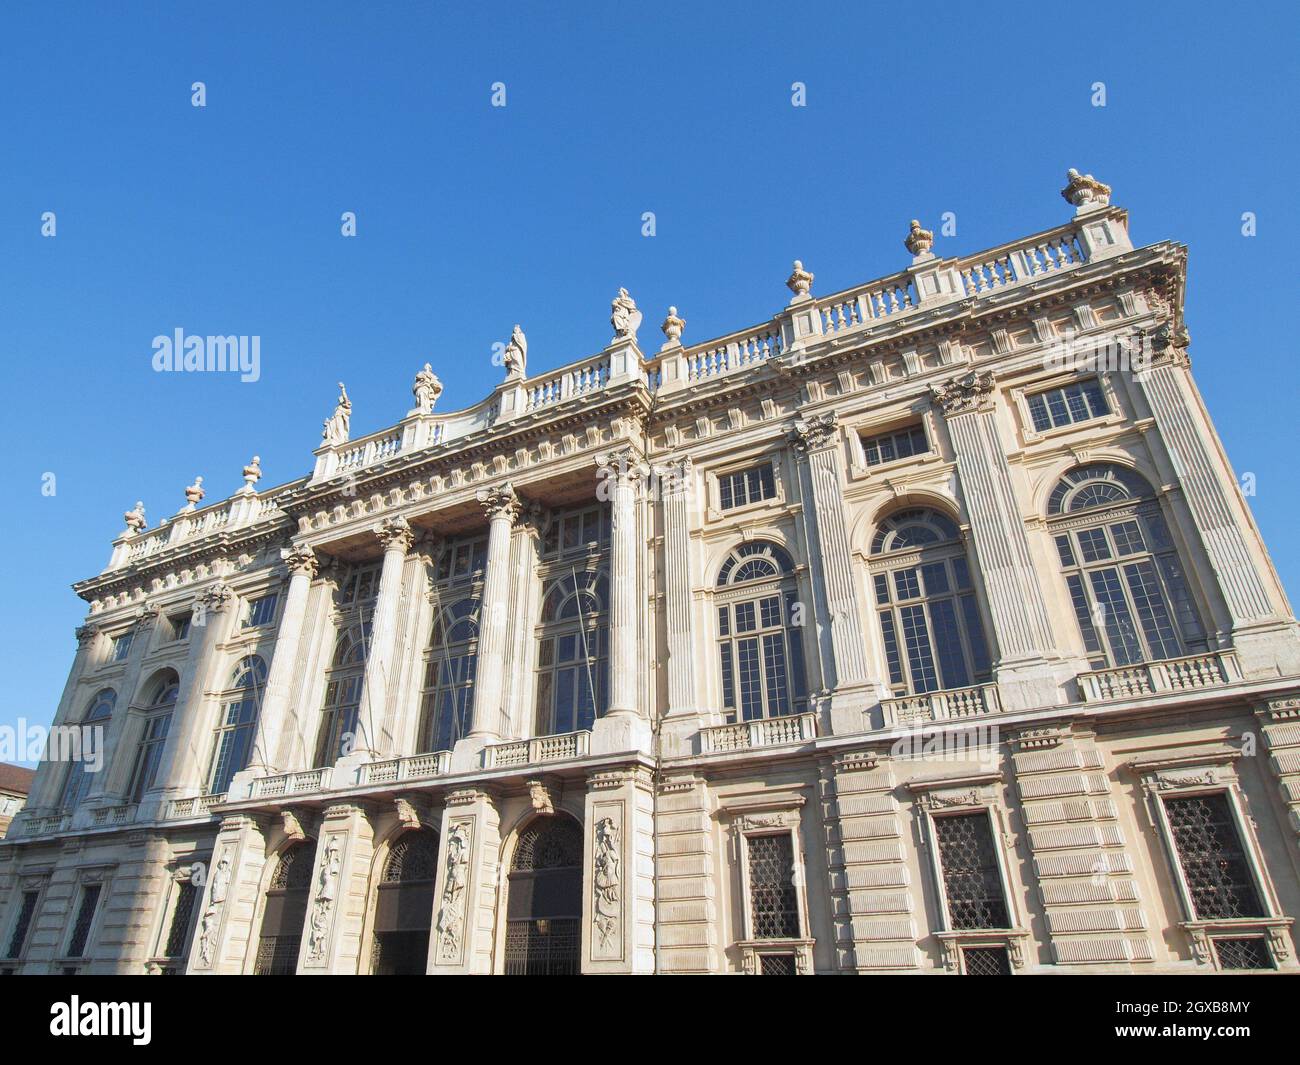 Palazzo Madama (Royal palace) in Piazza Castello Turin Italy. Stock Photo